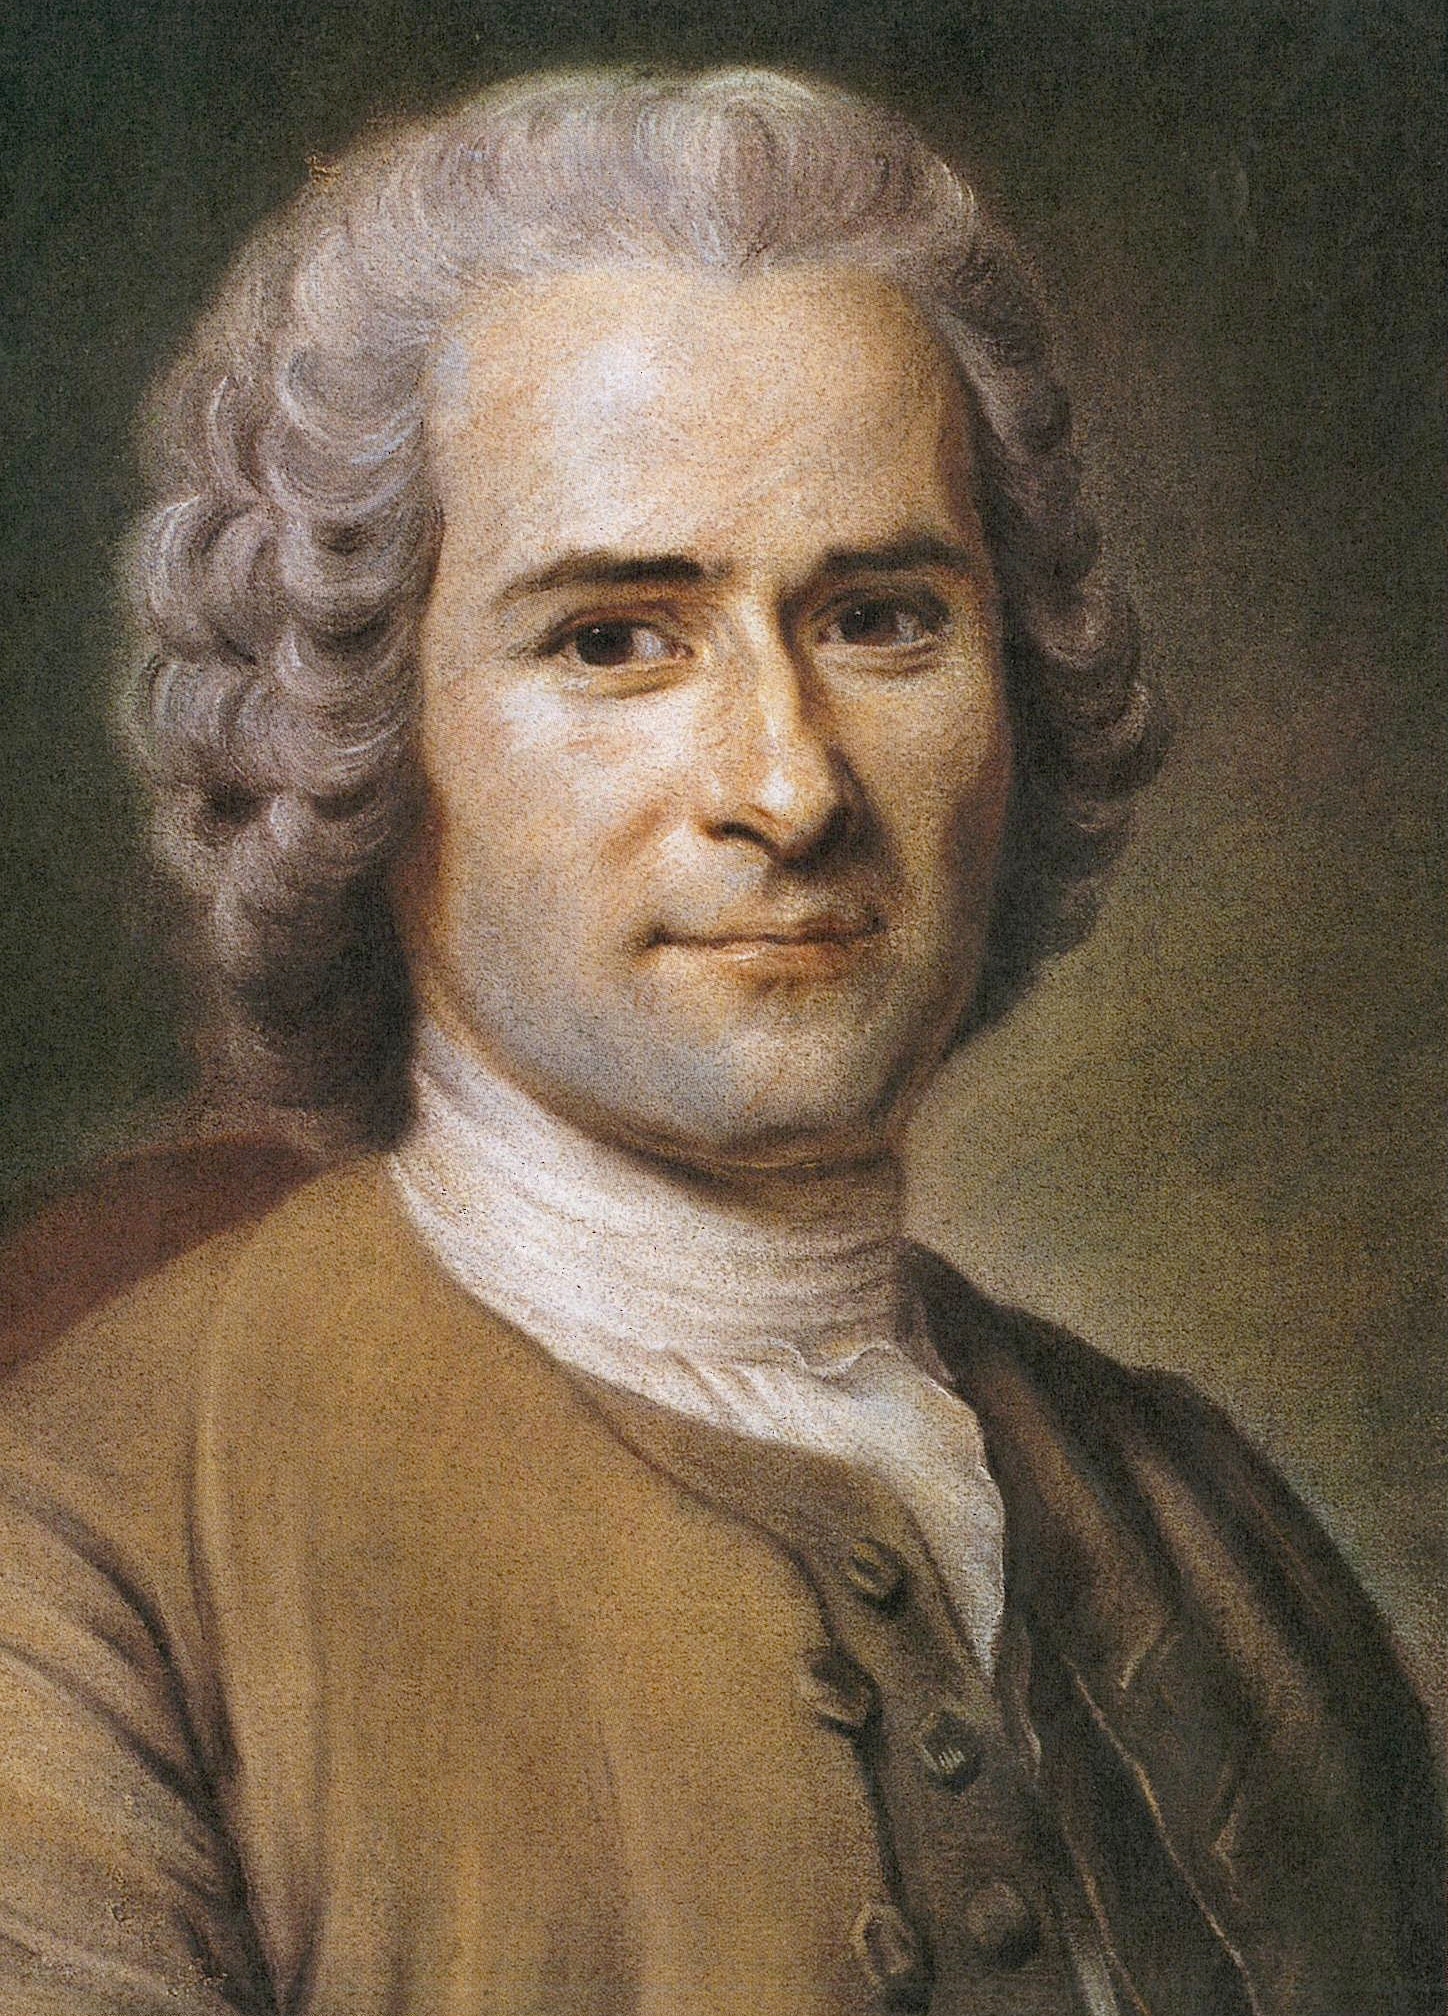 auteur Jean-Jacques Rousseau de la citation Le ridicule est l'arme favorite du vice. C'est par elle qu'en attaquant dans le fond des coeurs le respect qu'on doit à la vertu, il éteint enfin l'amour qu'on lui porte.